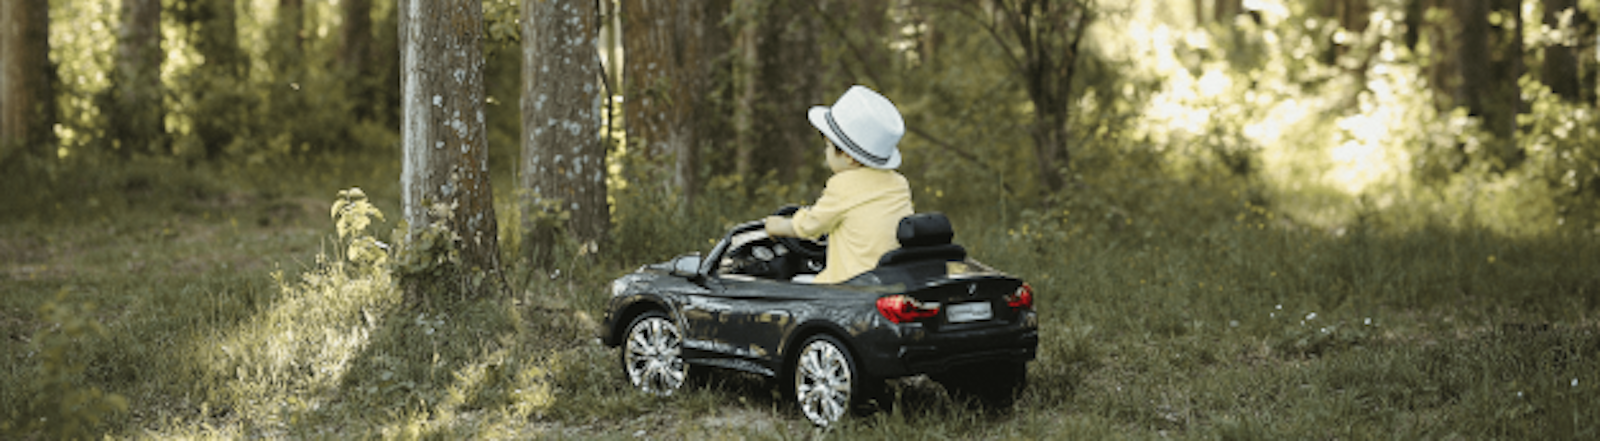 Sitzerhöhung im Auto für Erwachsene: Die 4 besten Modelle